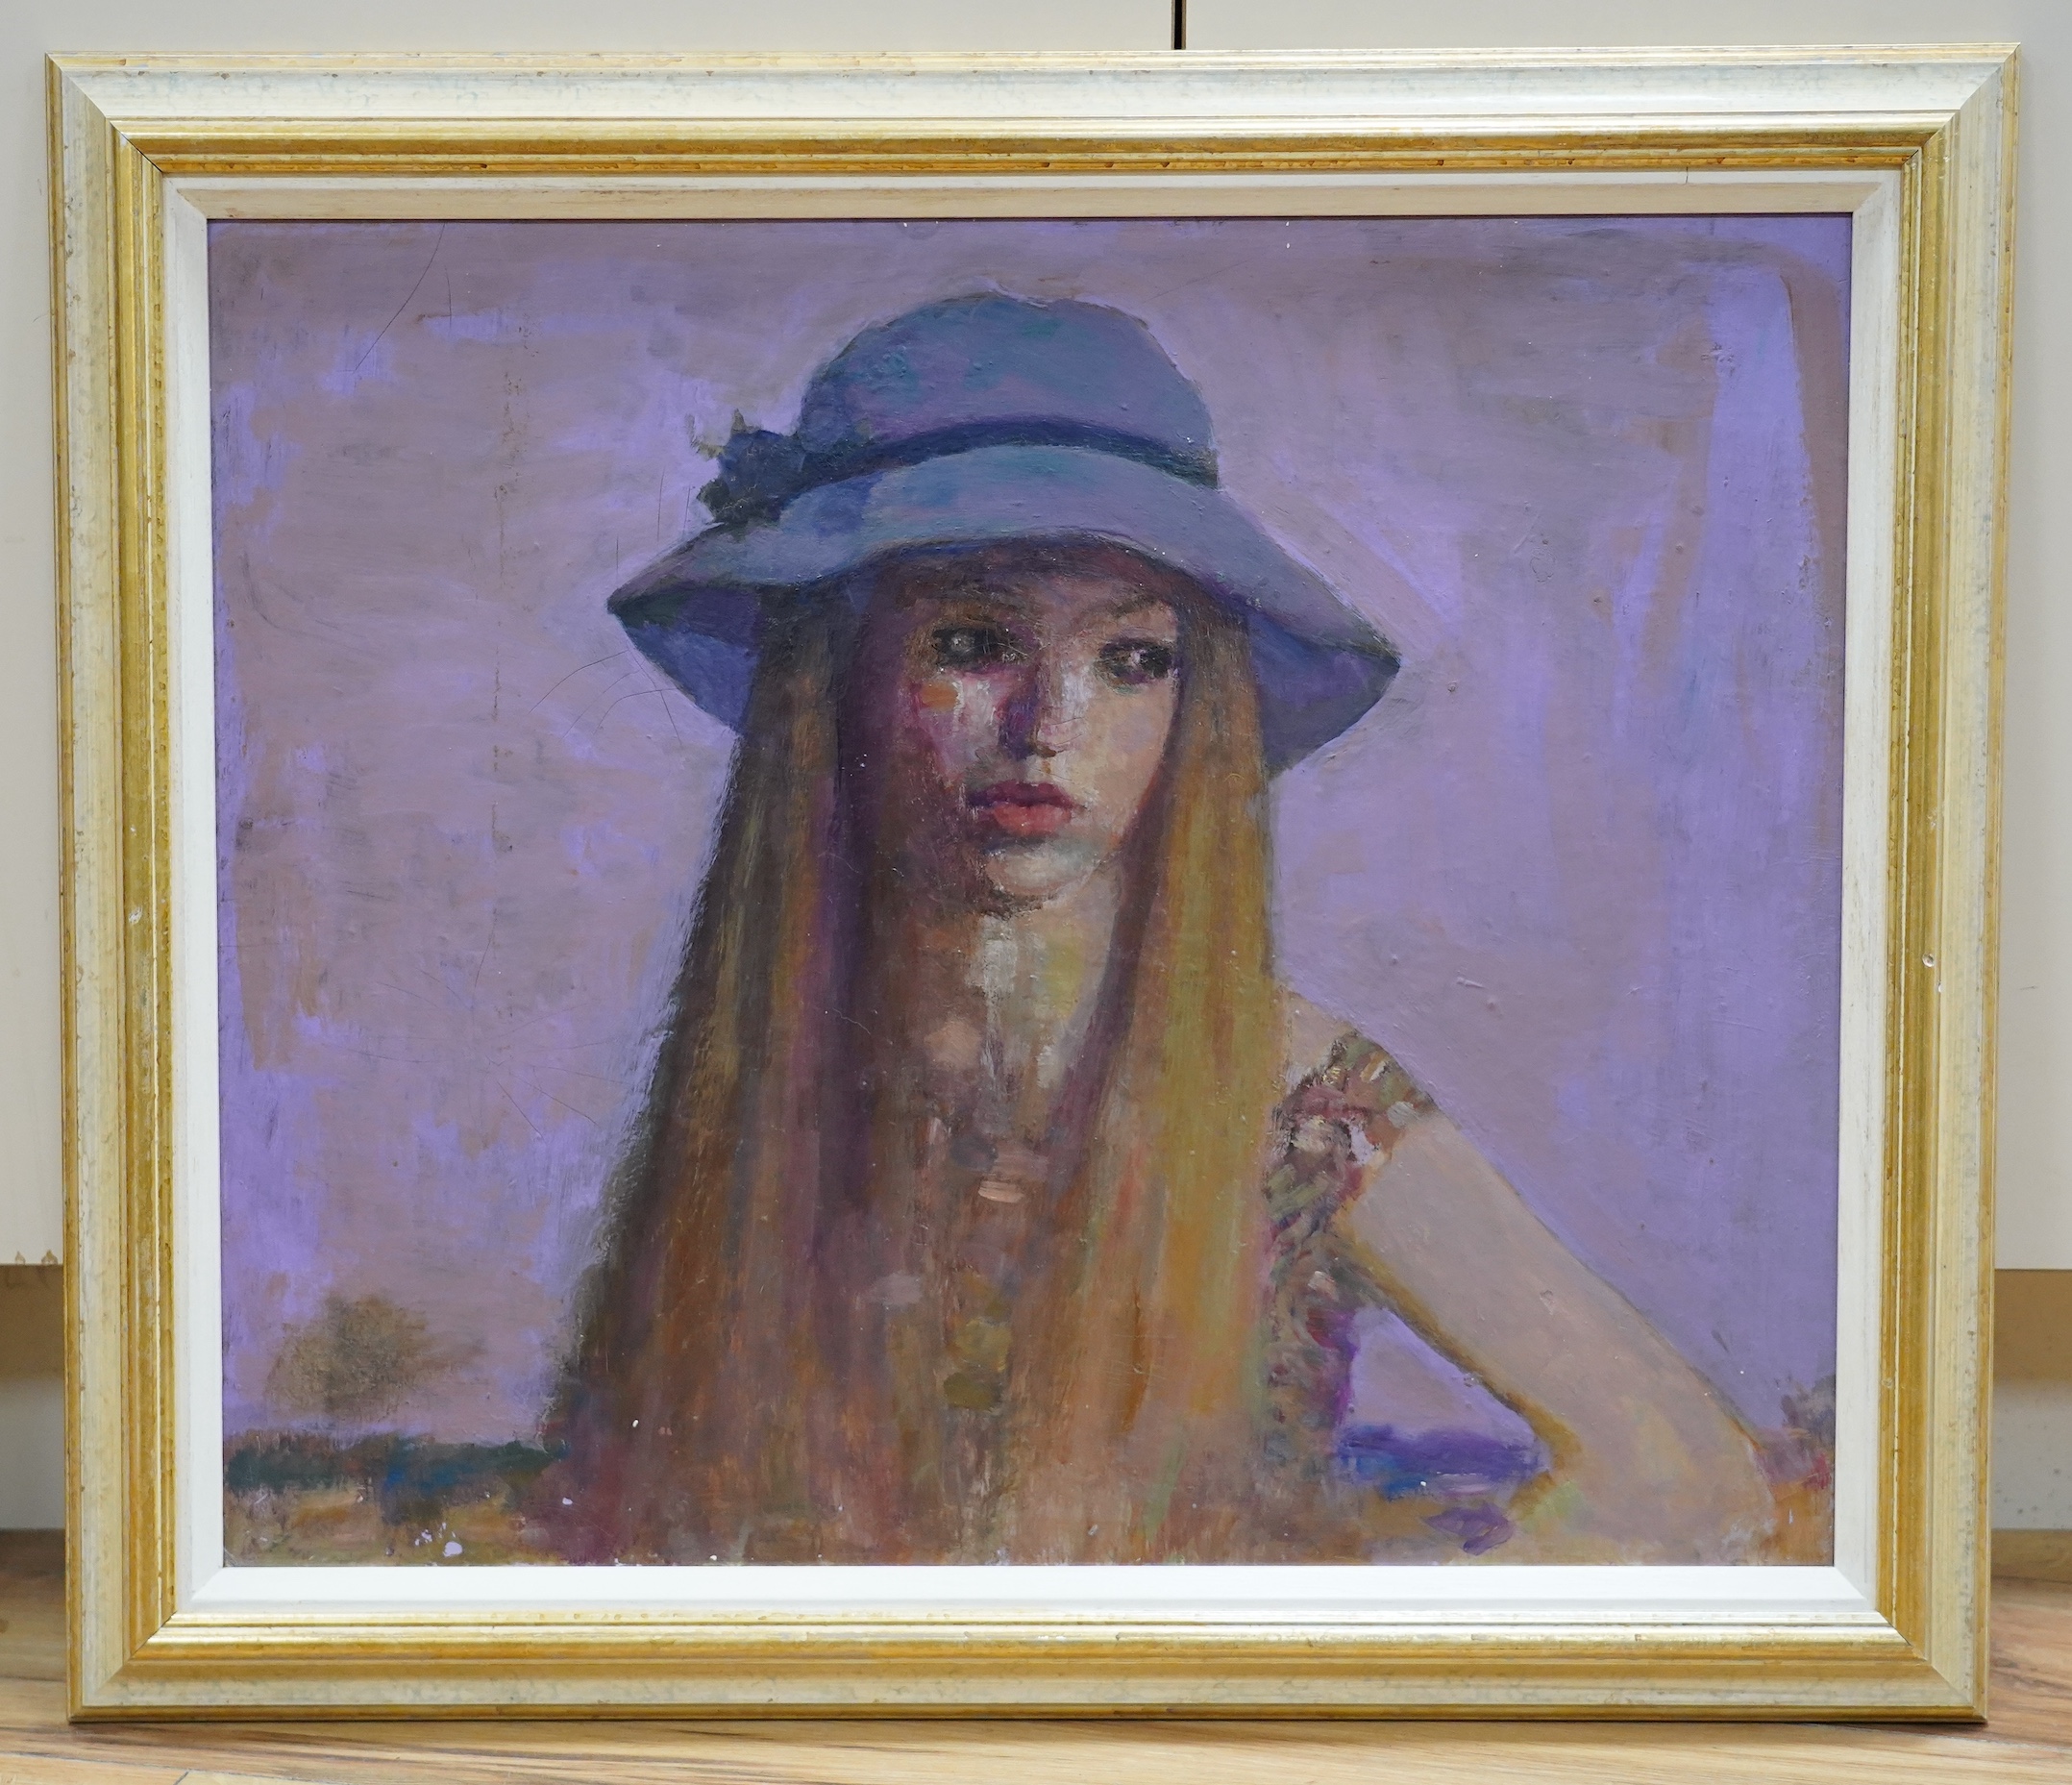 Alex C. Koolman (1907-1998), oil on board, Study of a girl wearing a hat, 50 x 60cm